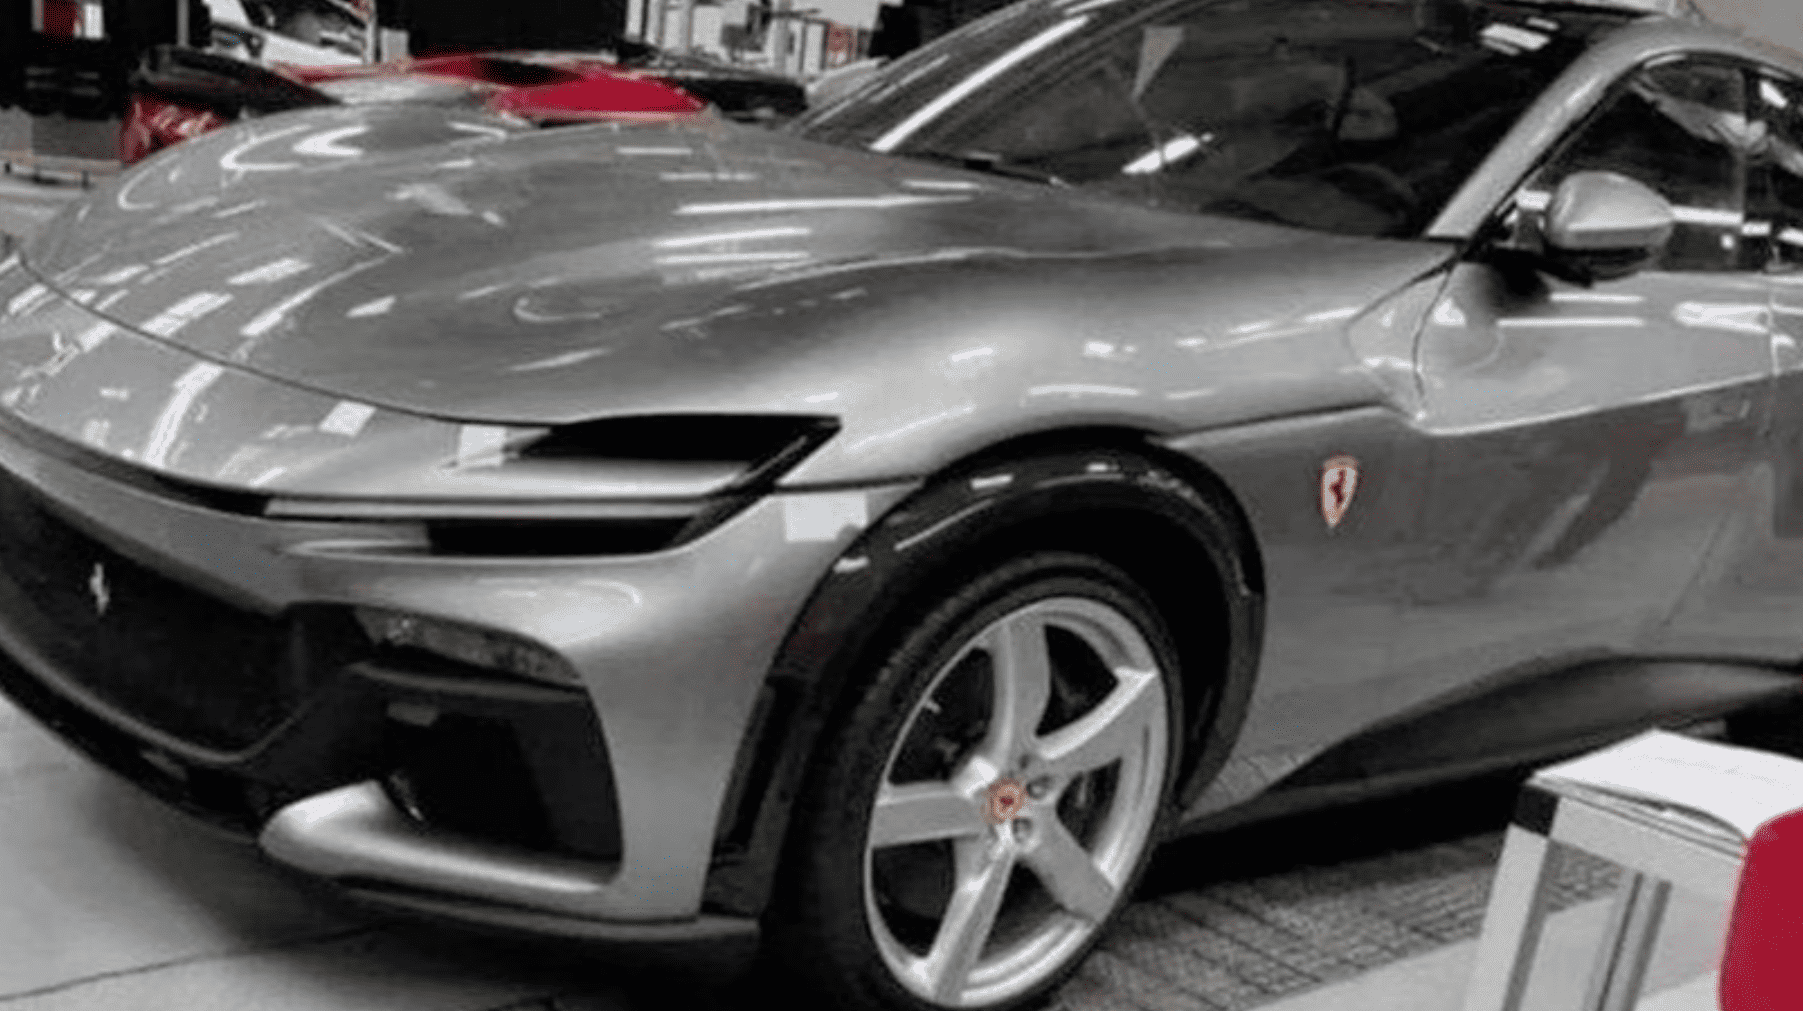 Zdjęcie SUVa Ferrari, które wyciekło do sieci